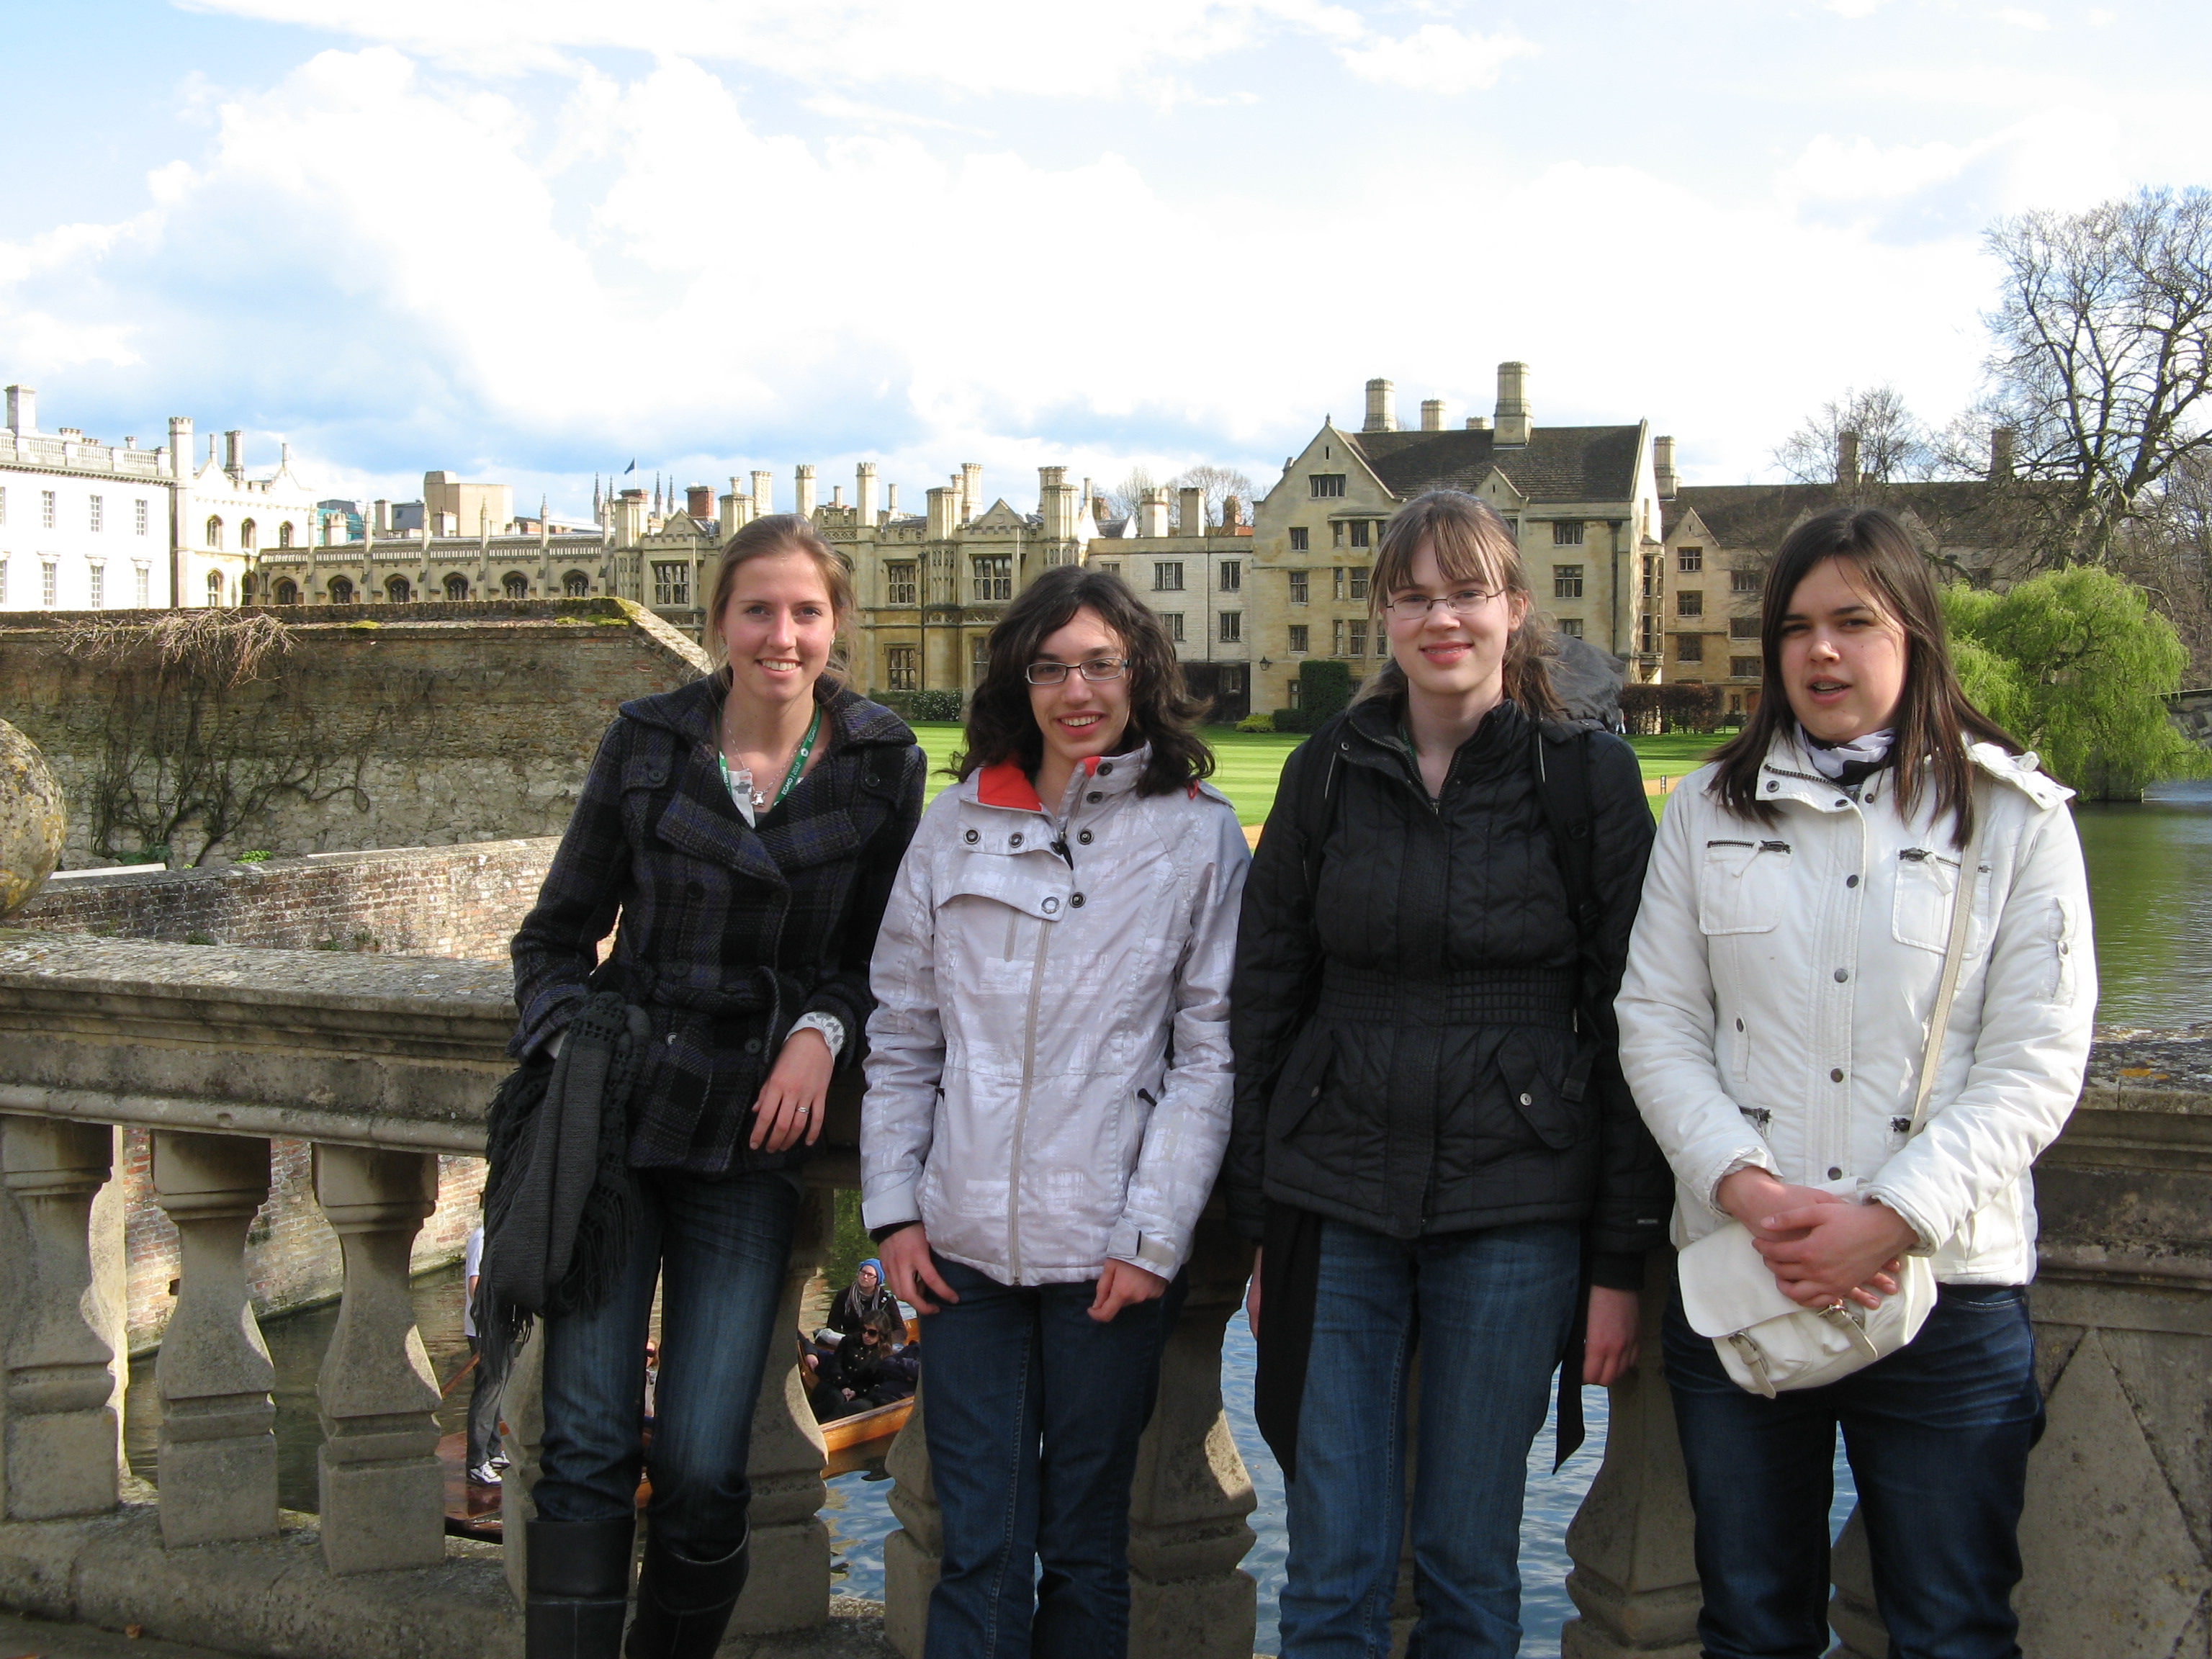 V.l.n.r. Loes Bazuin, Marieke van der Wegen, Michelle Sweering en Carina Both bij de Wiskunde Olympiade speciaal voor meisjes in Cambridge, Verenigd Koninkrijk.